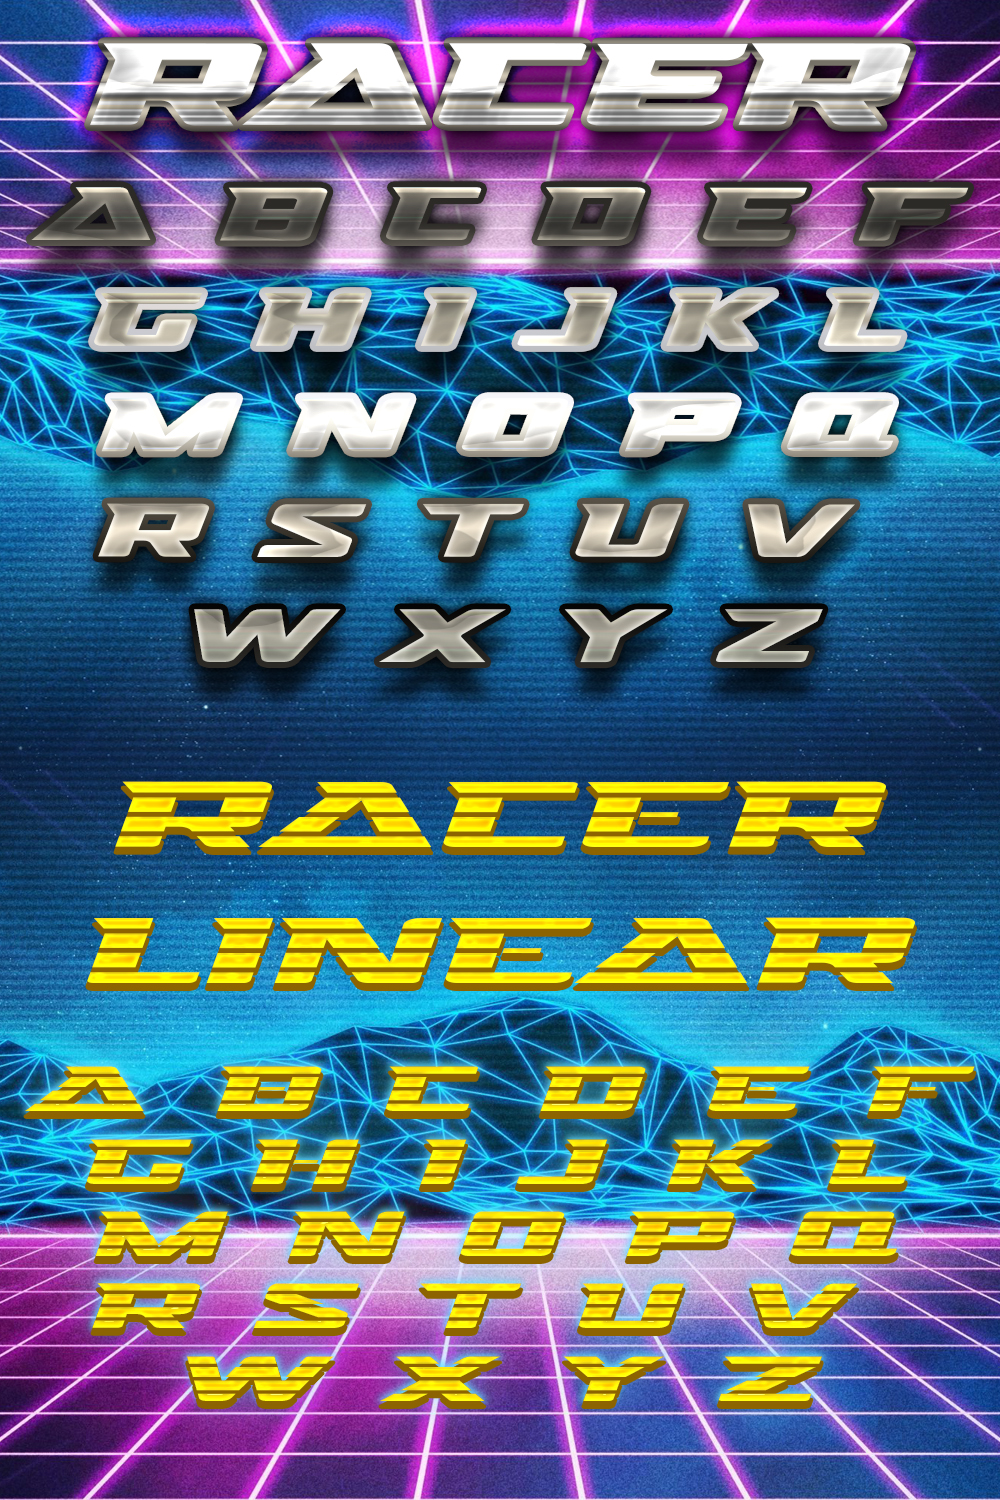 Racer font of pinterest.